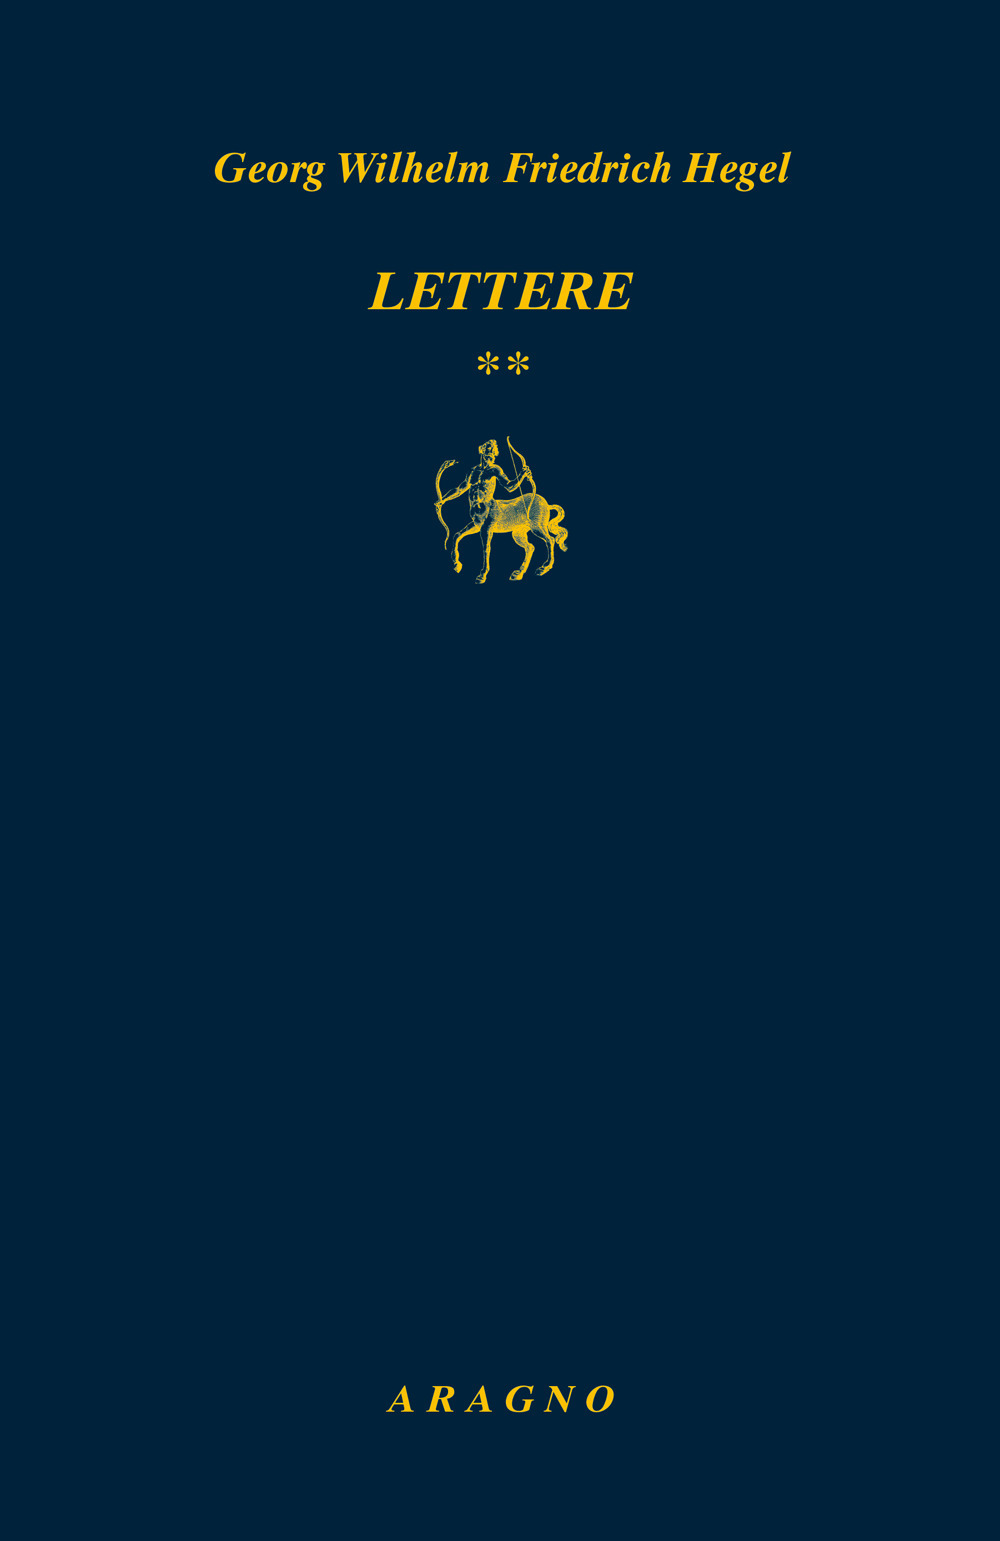 Lettere. Vol. 2